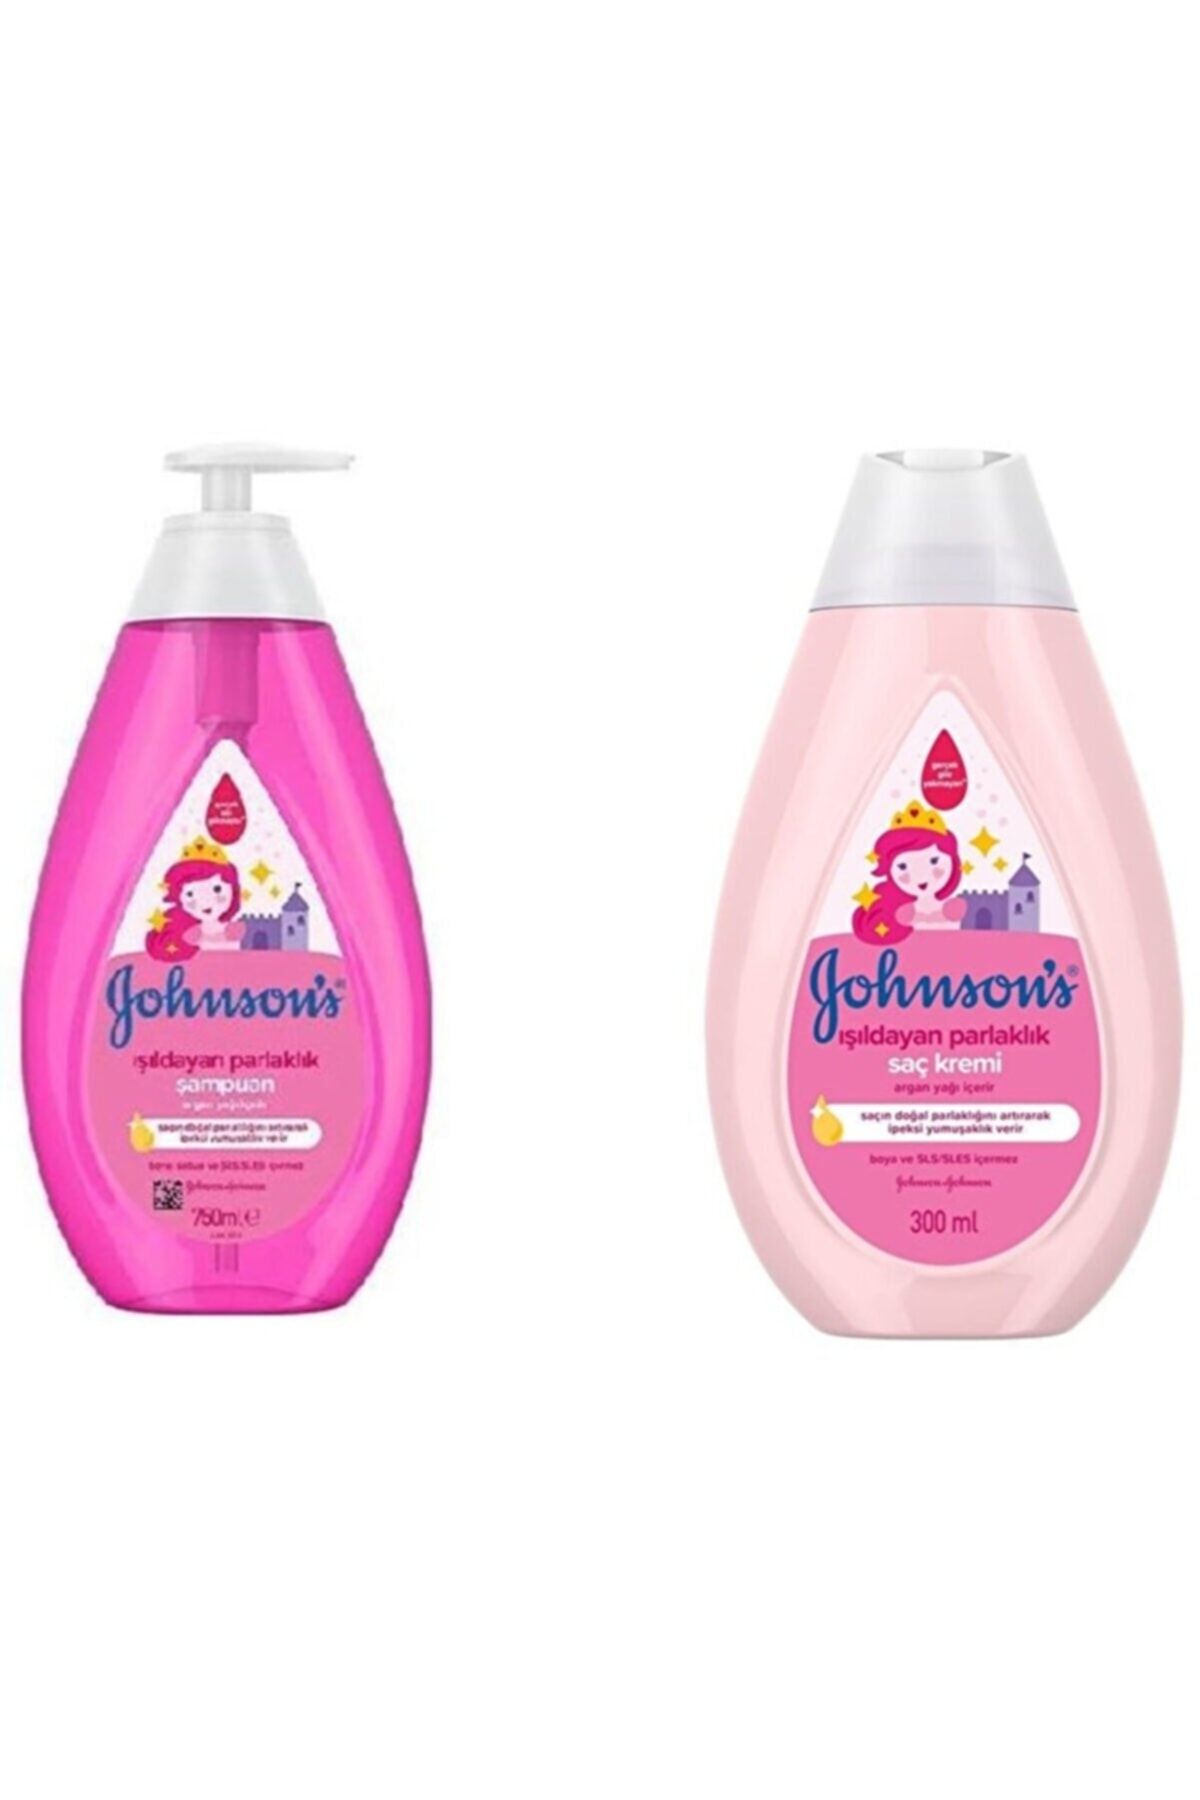 Johnson's Baby Işıldayan Parlaklık Şampuan 750+ Baby Işıldayan Parlaklık Saç Kremi 300 ml